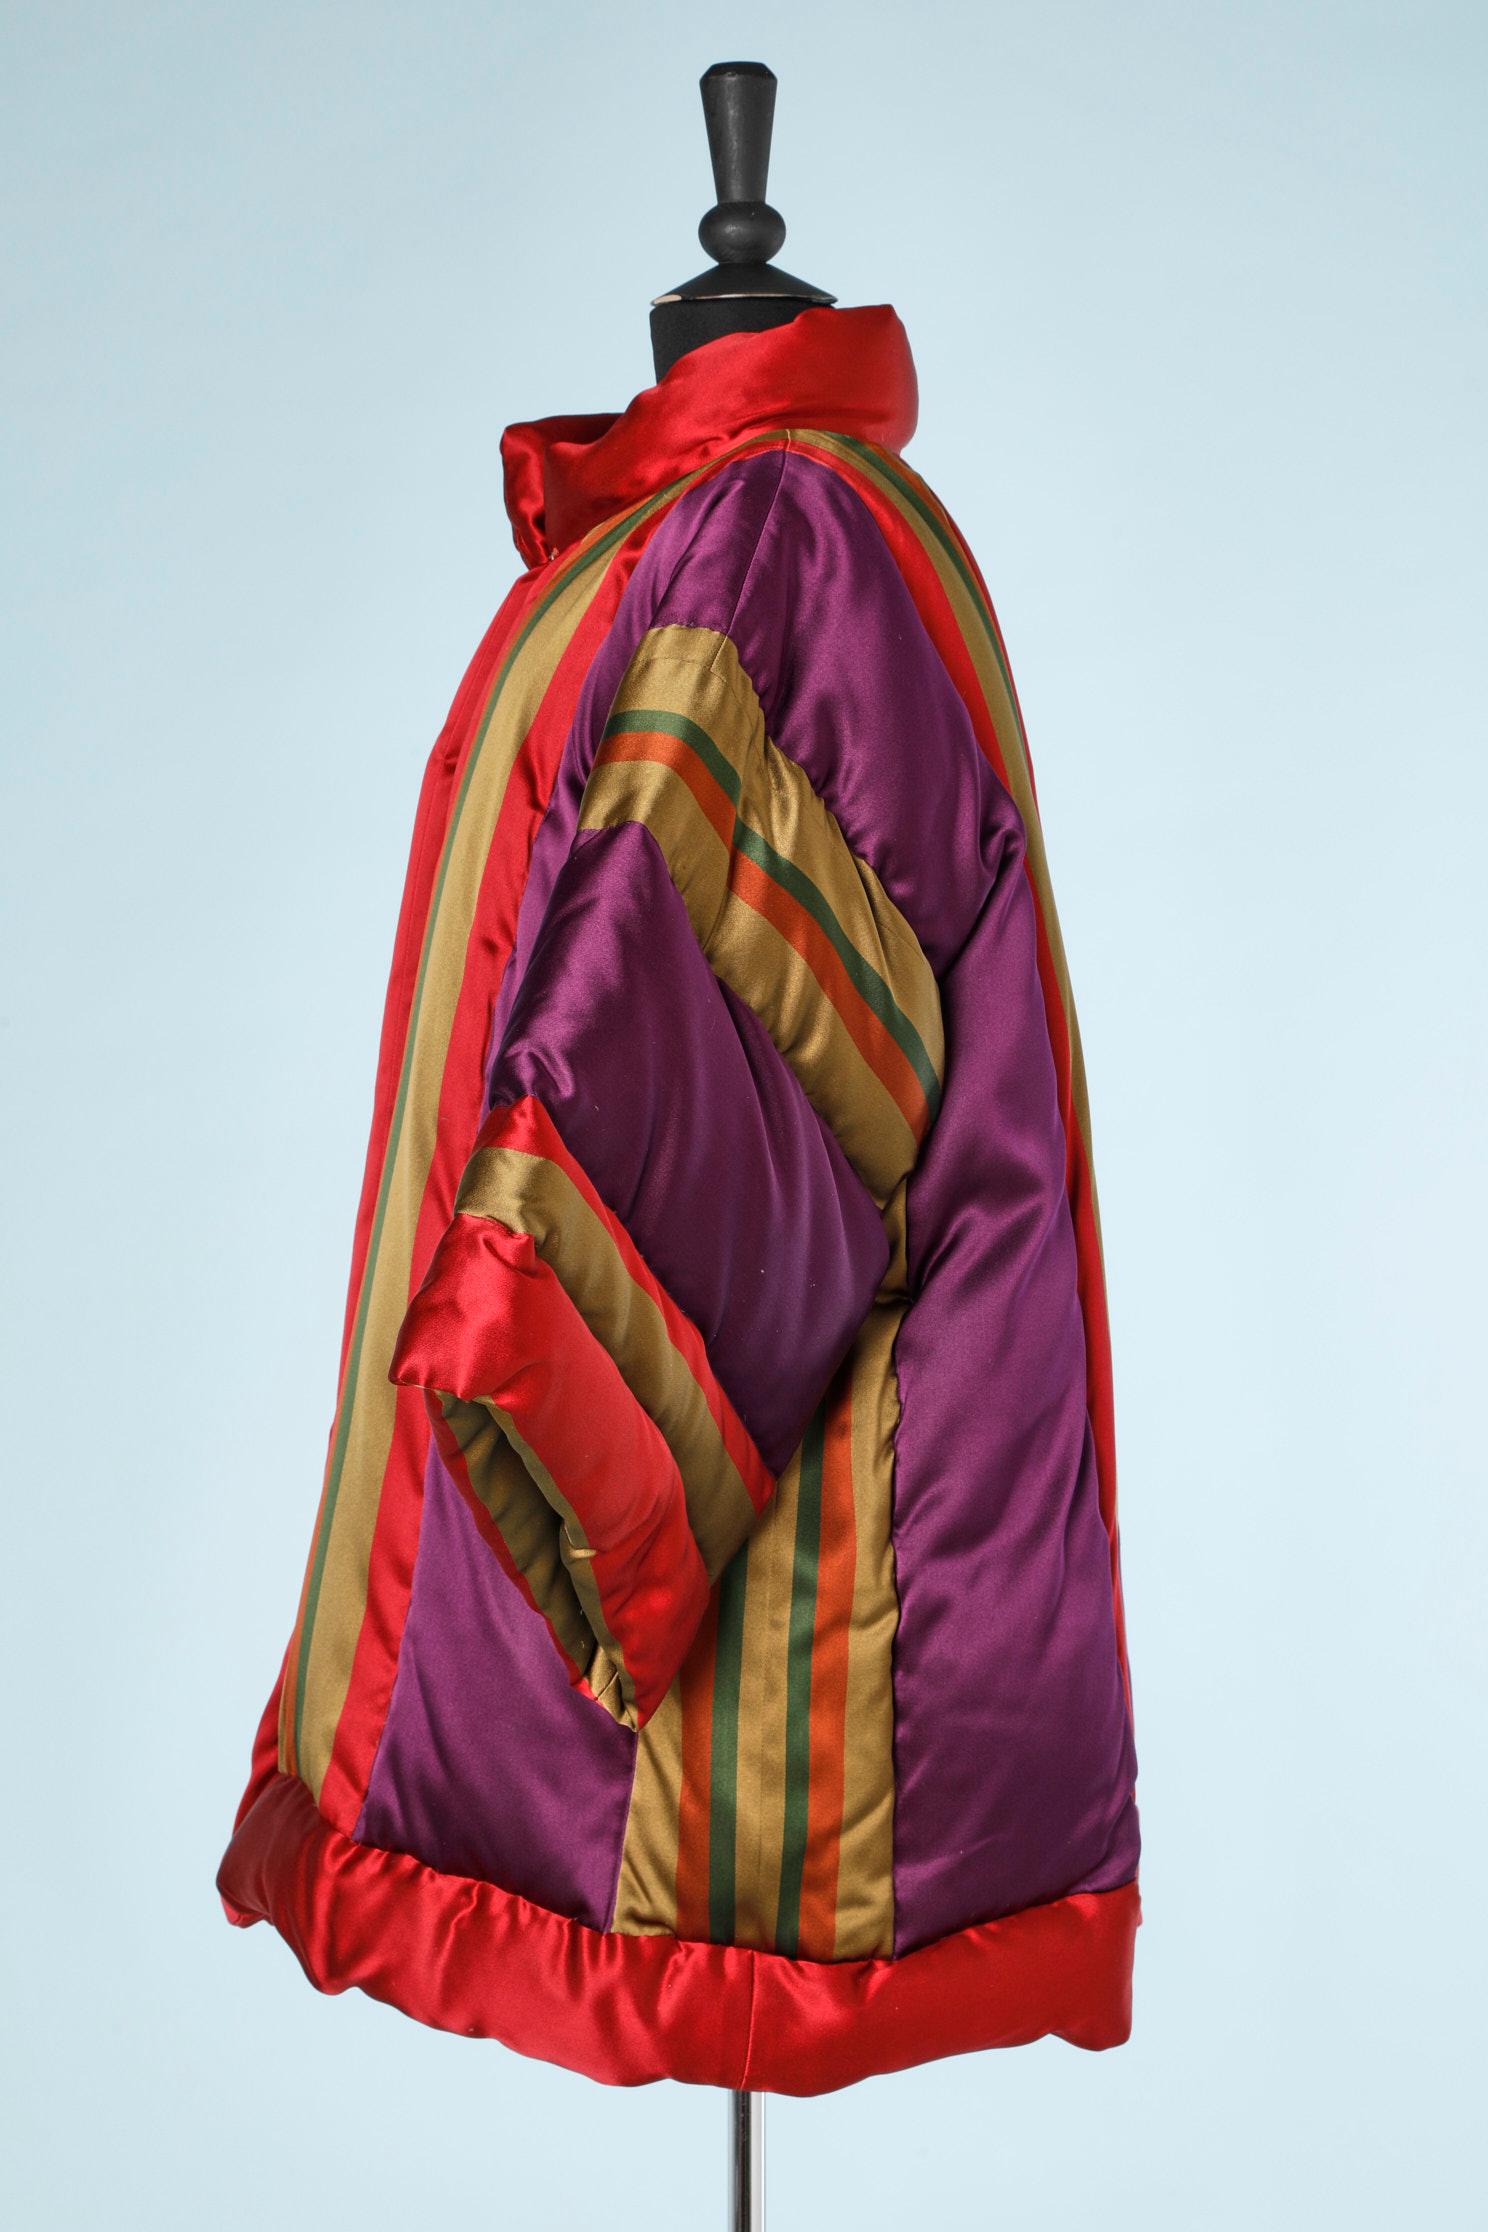 Red Puffer jacket in multicolor satin Oscar de la Renta 